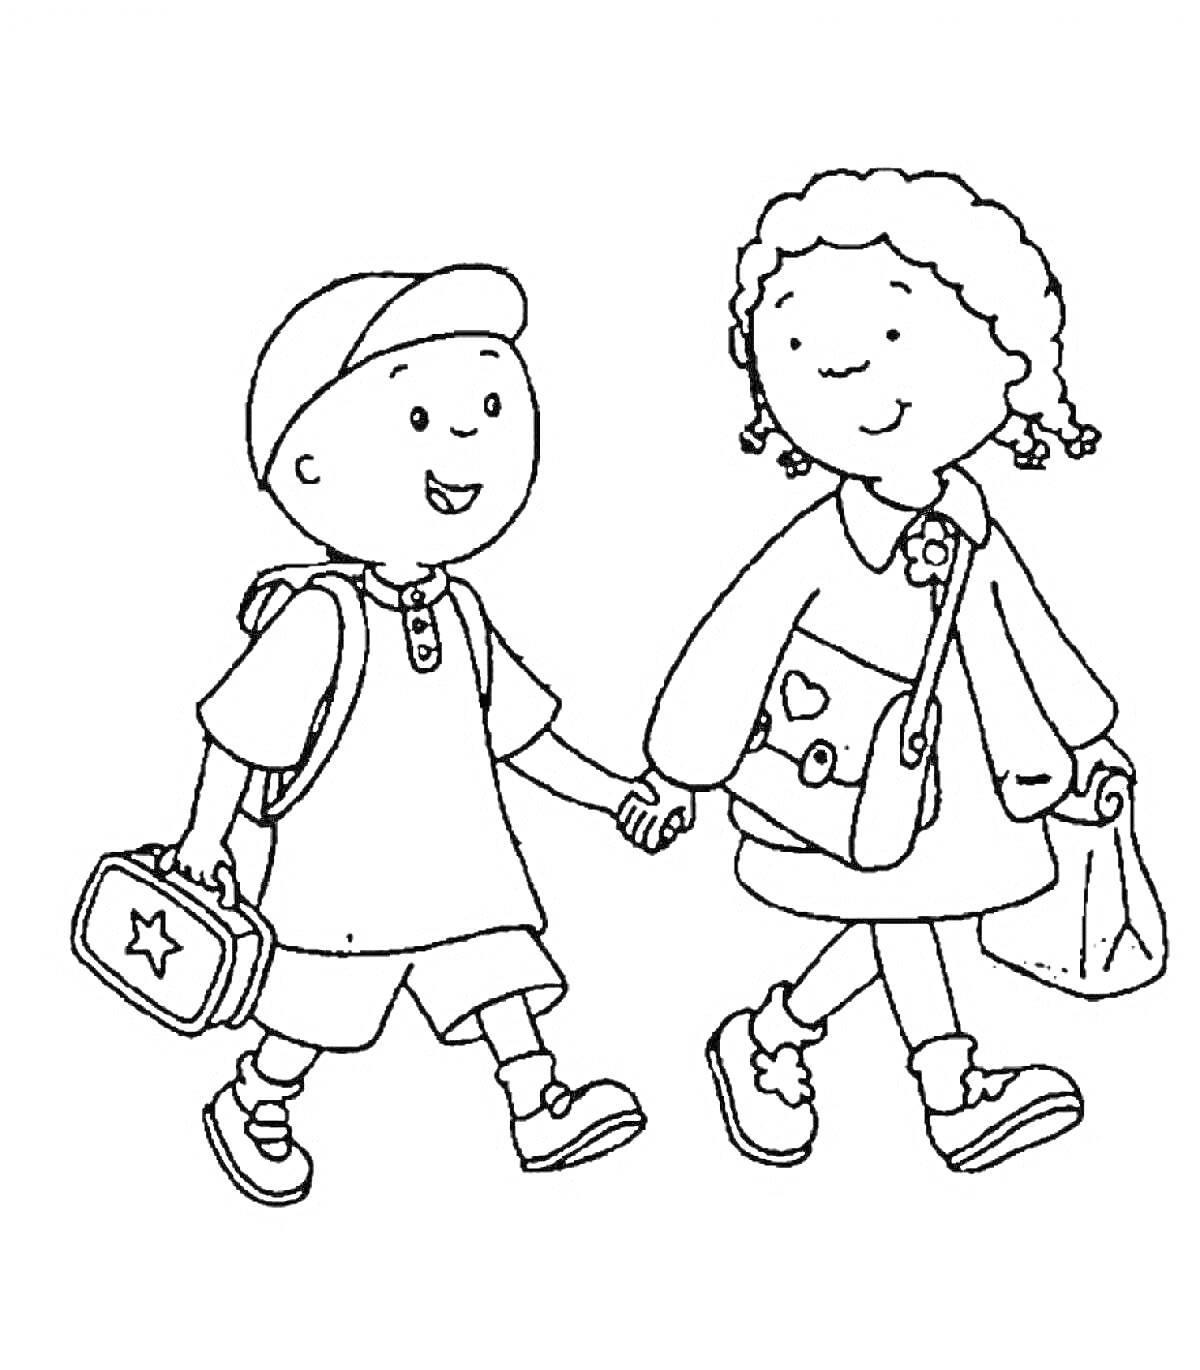 Мальчик и девочка держатся за руки, мальчик с рюкзаком и ланчбоксом, девочка с сумочкой и пакетом